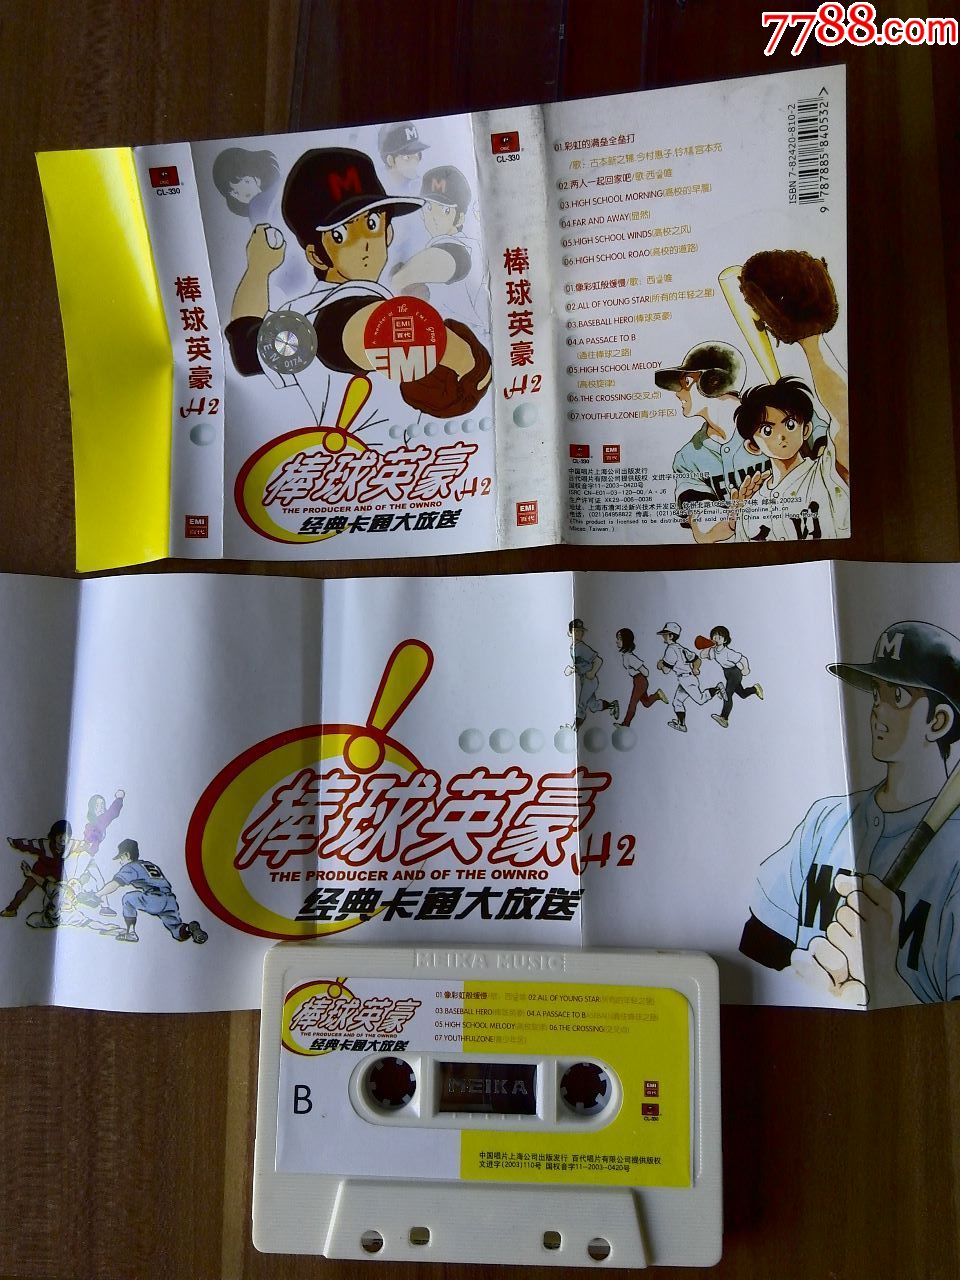 日本卡通电影《棒球英豪H2》中国唱片上海公